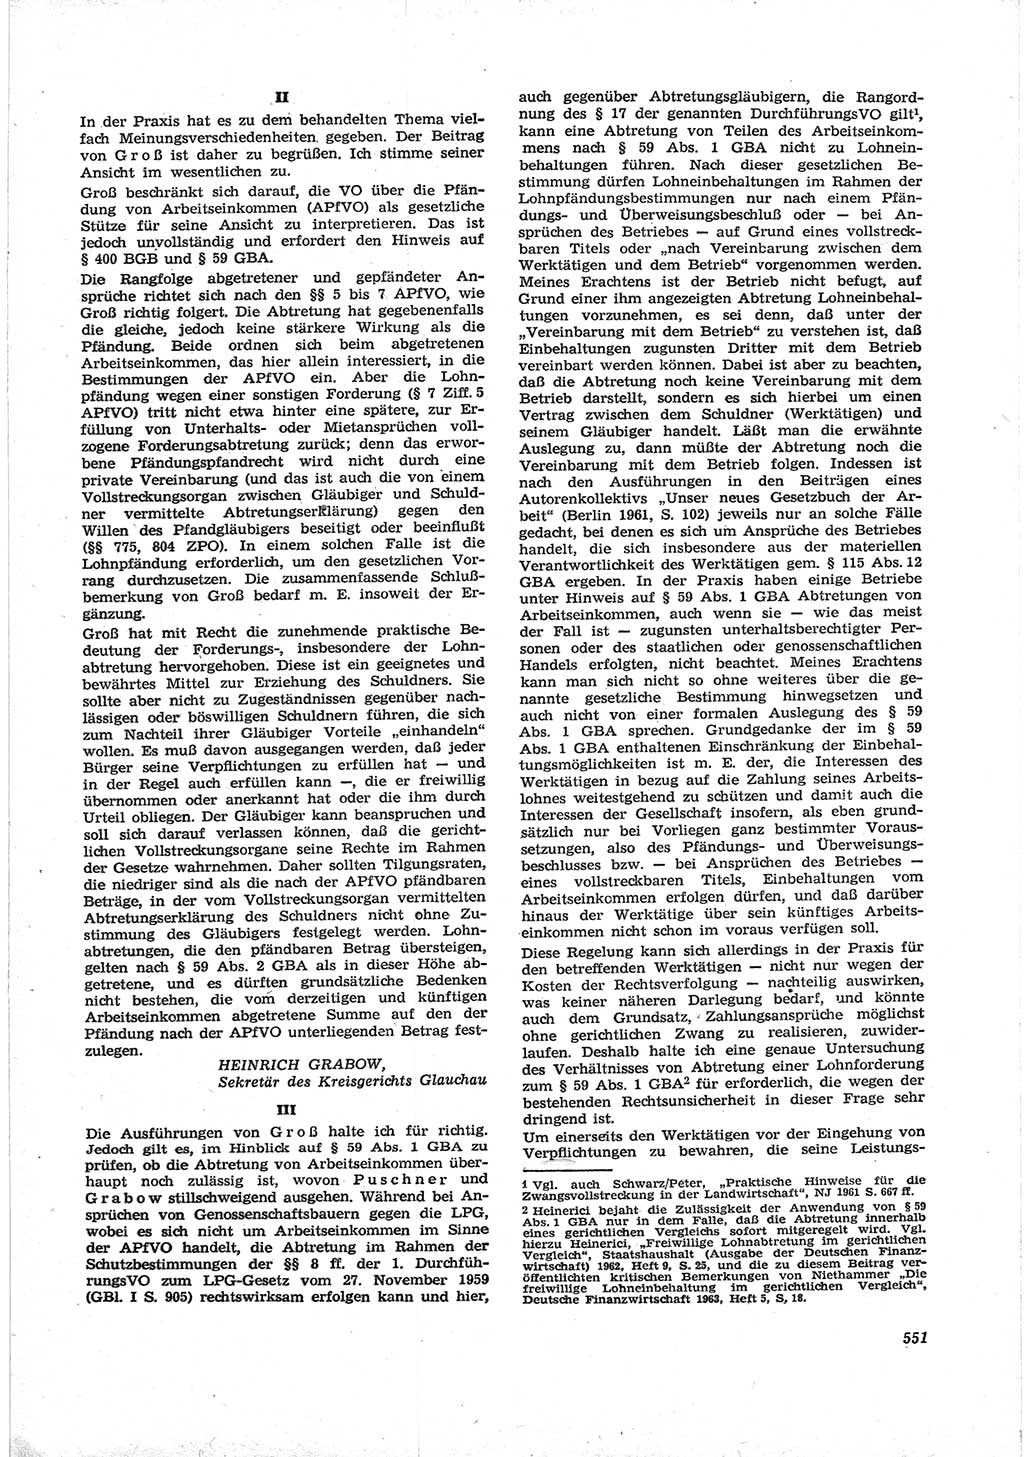 Neue Justiz (NJ), Zeitschrift für Recht und Rechtswissenschaft [Deutsche Demokratische Republik (DDR)], 17. Jahrgang 1963, Seite 551 (NJ DDR 1963, S. 551)